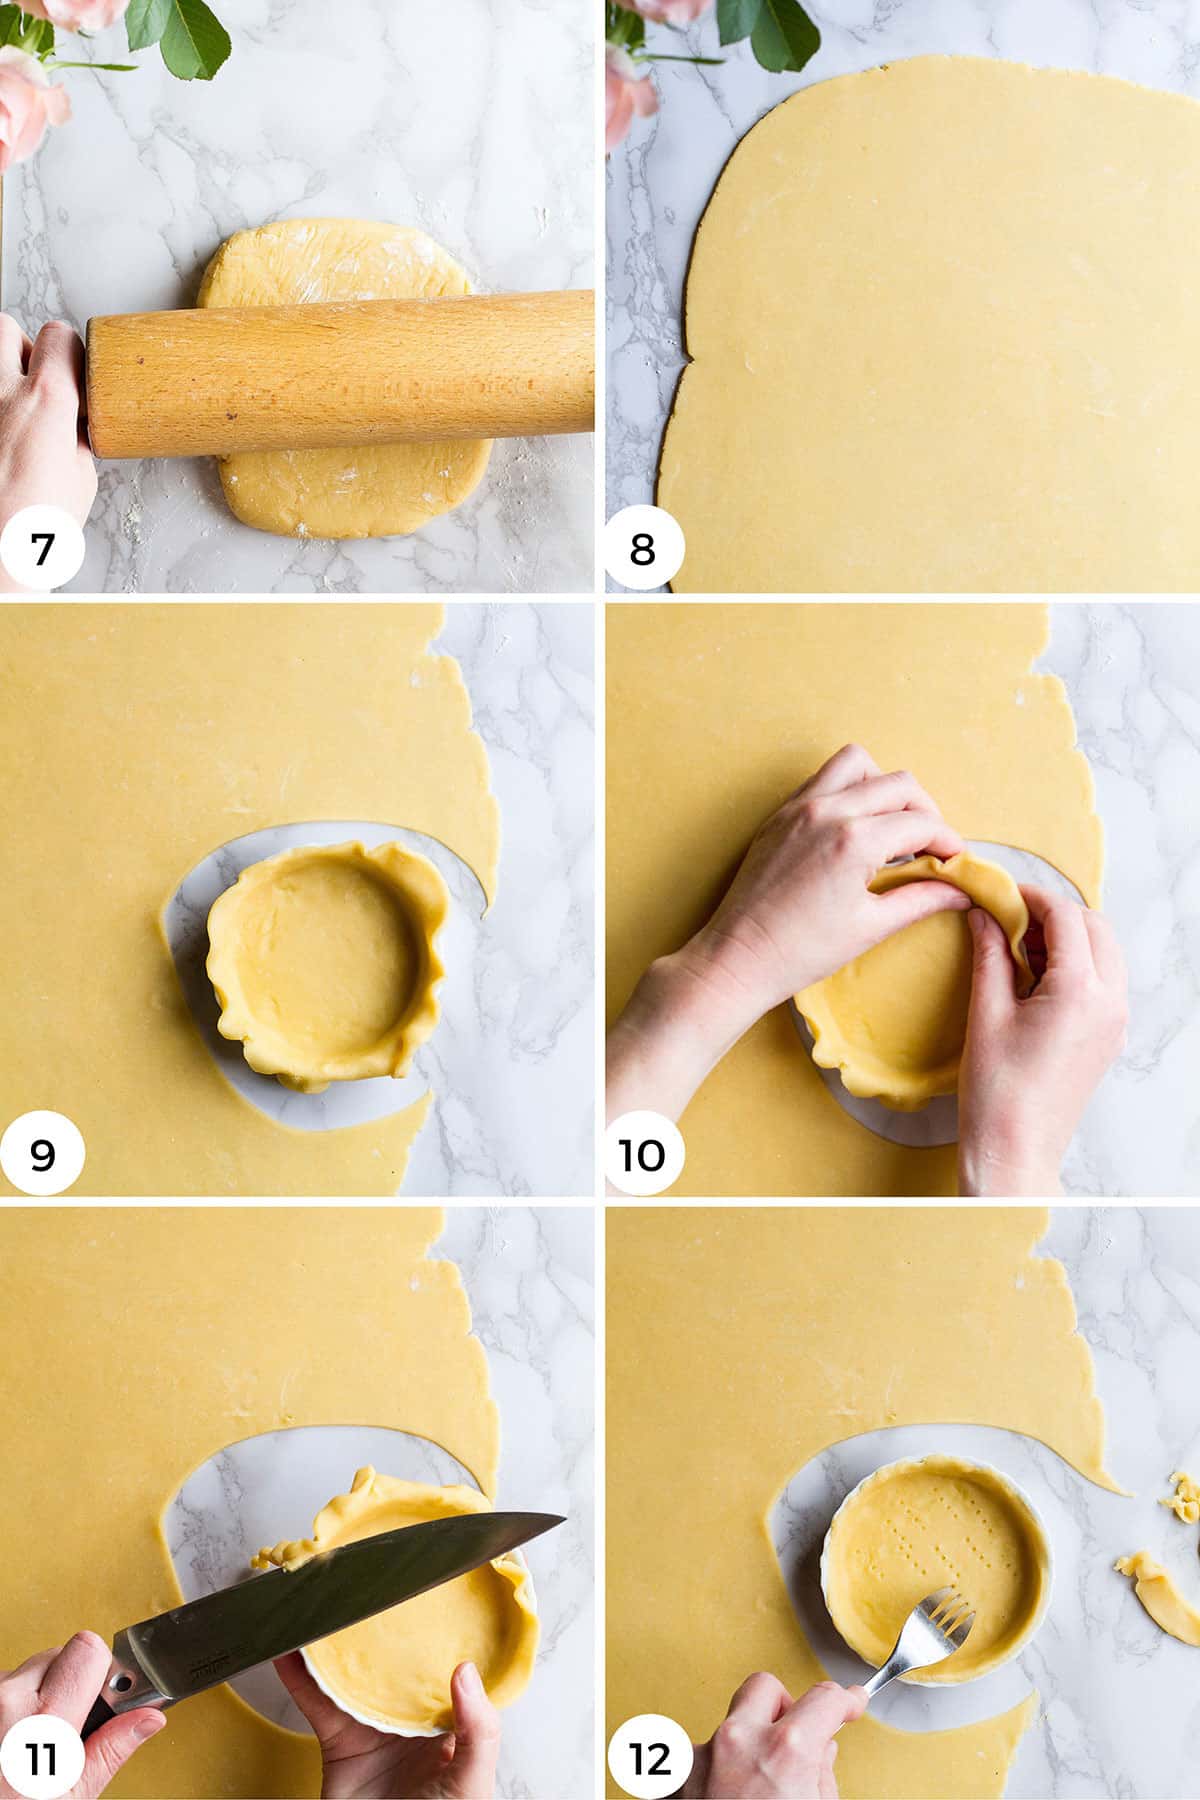 Steps to shape the tart dough.